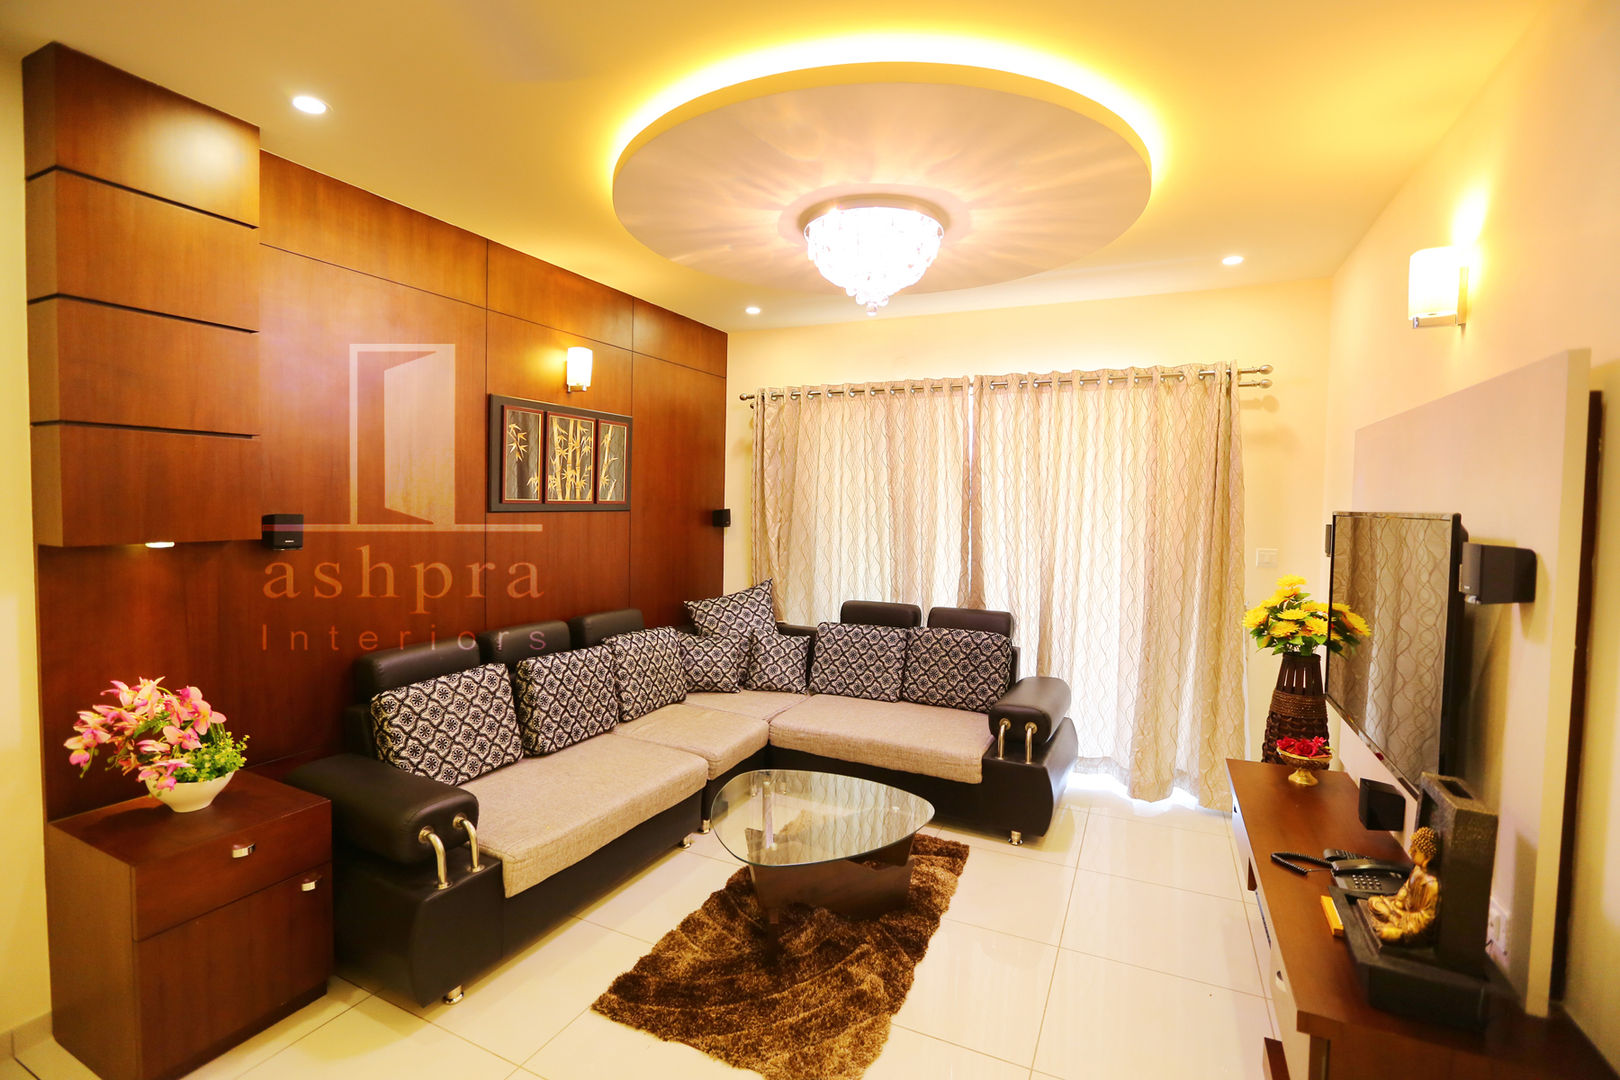 Interior work for a 2 bedroom apartment @ Mangalore.., Ashpra interiors Ashpra interiors Livings de estilo asiático Salas y sillones